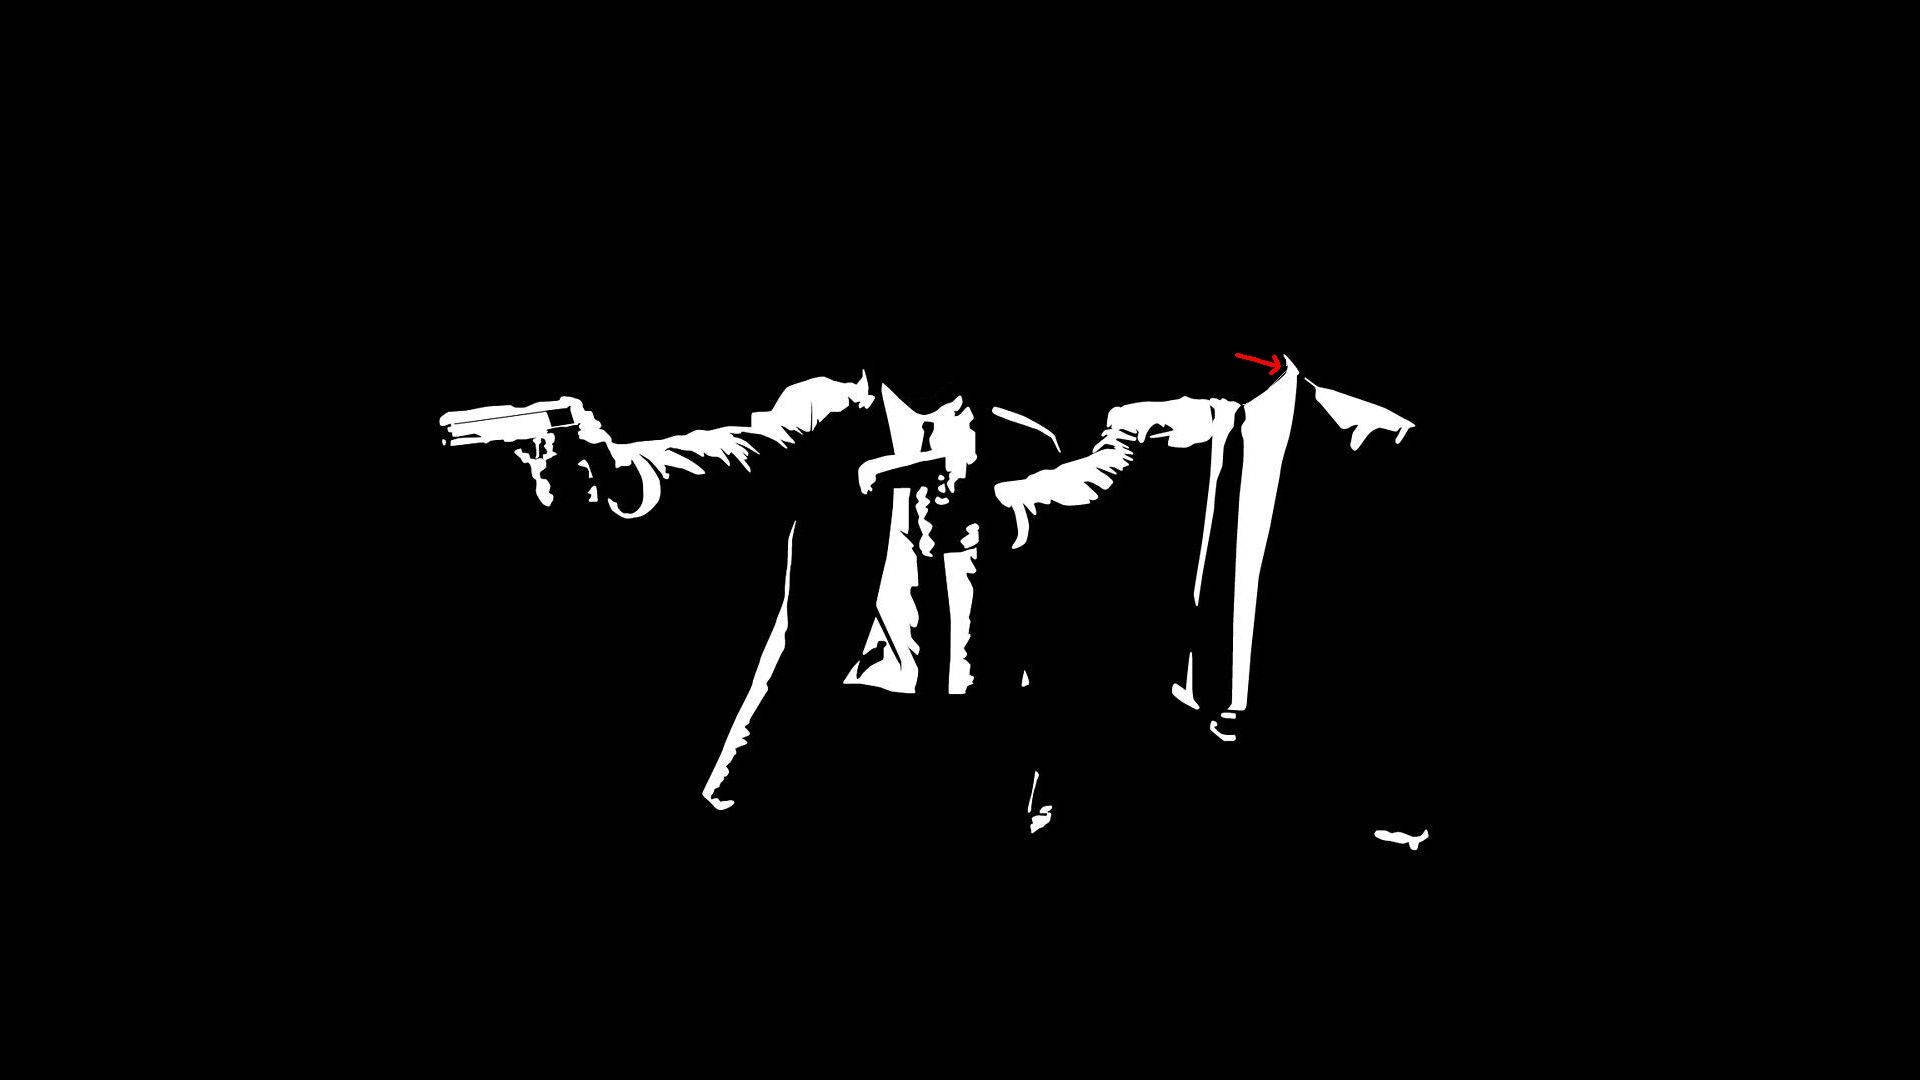 Black And White Suit Pulp Fiction Digital Art